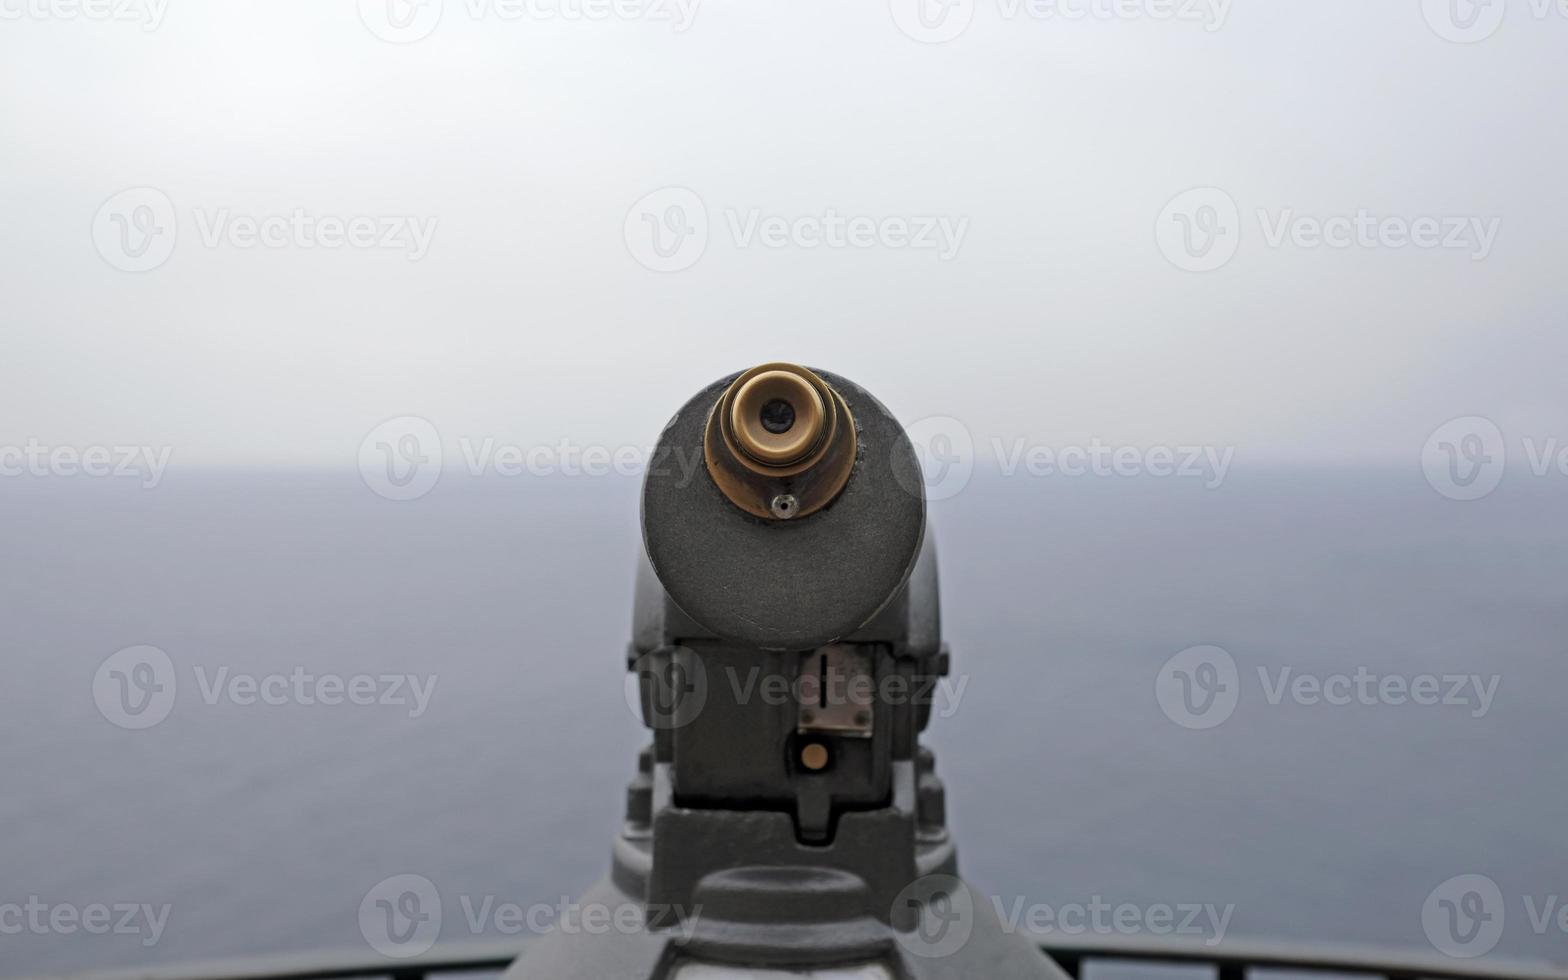 telescopio en el punto de vista con vistas a la costa en capri, italia foto